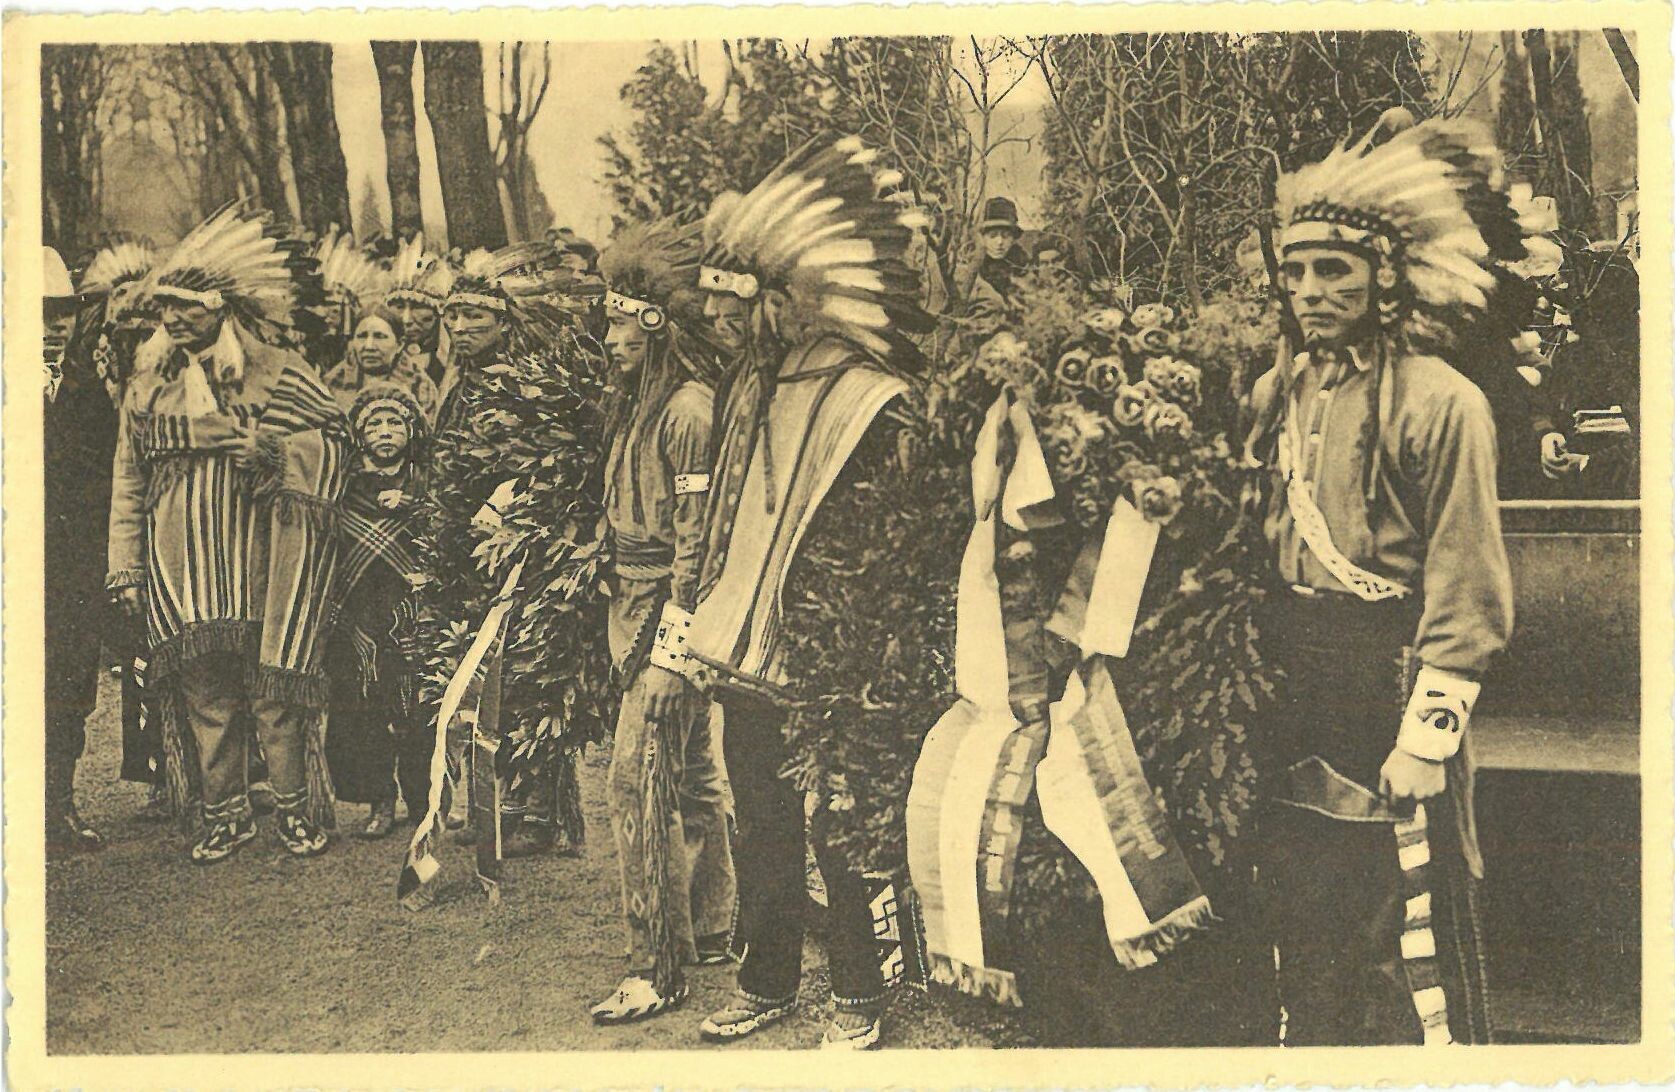 Ehrung eines Indianerfreundes: In Deutschland weilende indianische Gäste aus Dakota legen am Grab Karl-Mays Kränze nieder, Januar 1928 (Karl-May-Museum gGmbH RR-R)